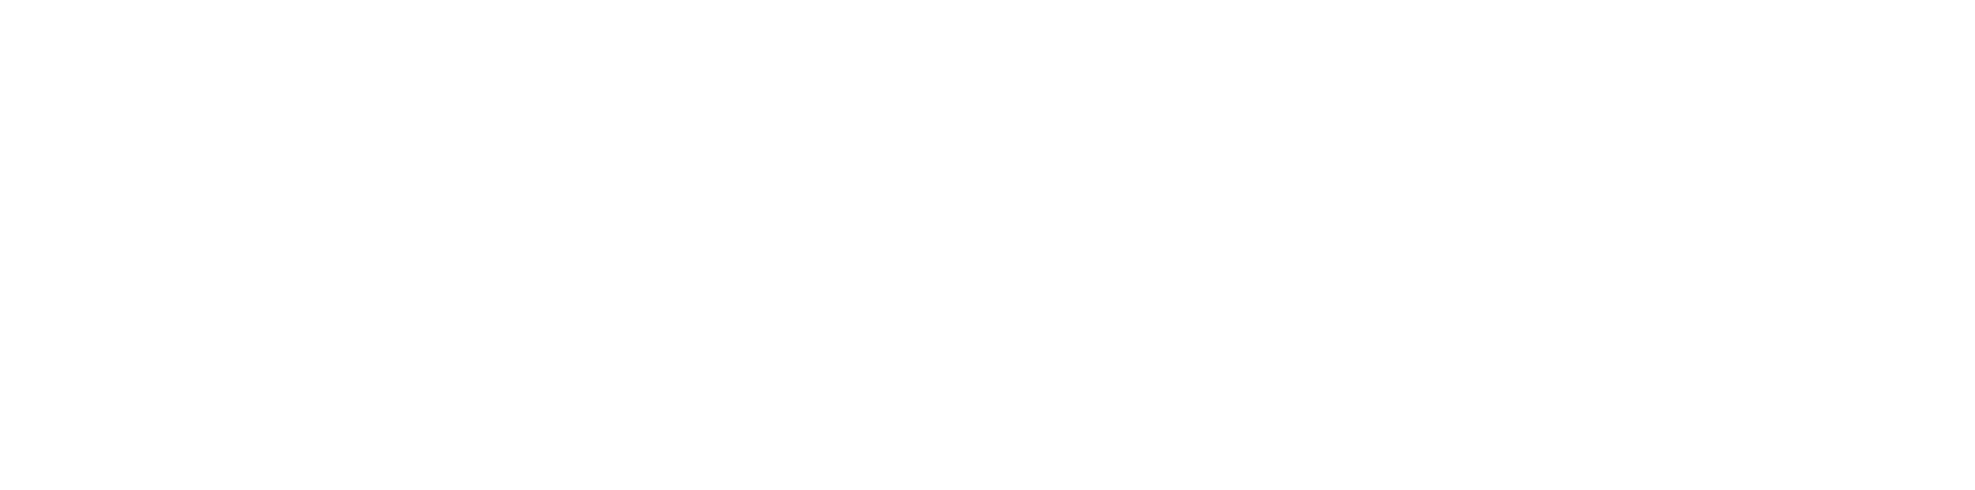 Industry Era Women Leaders logo